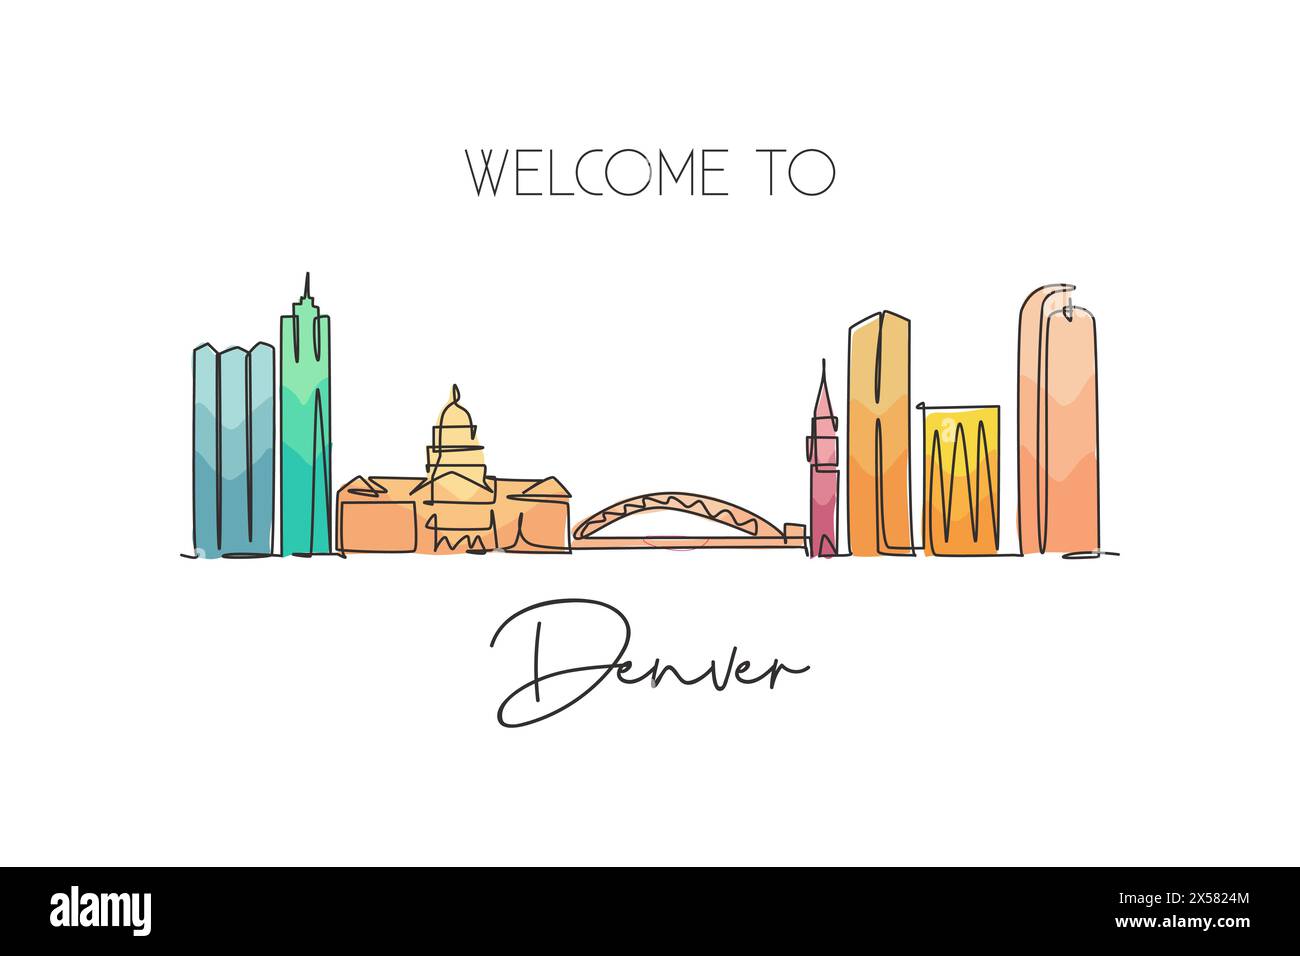 Einzelne durchgehende Linienzeichnung der Skyline von Denver, USA. Berühmte Stadt und Landschaft. World Travel Concept, Wohnkultur, Poster mit Wandmalerei. Stock Vektor